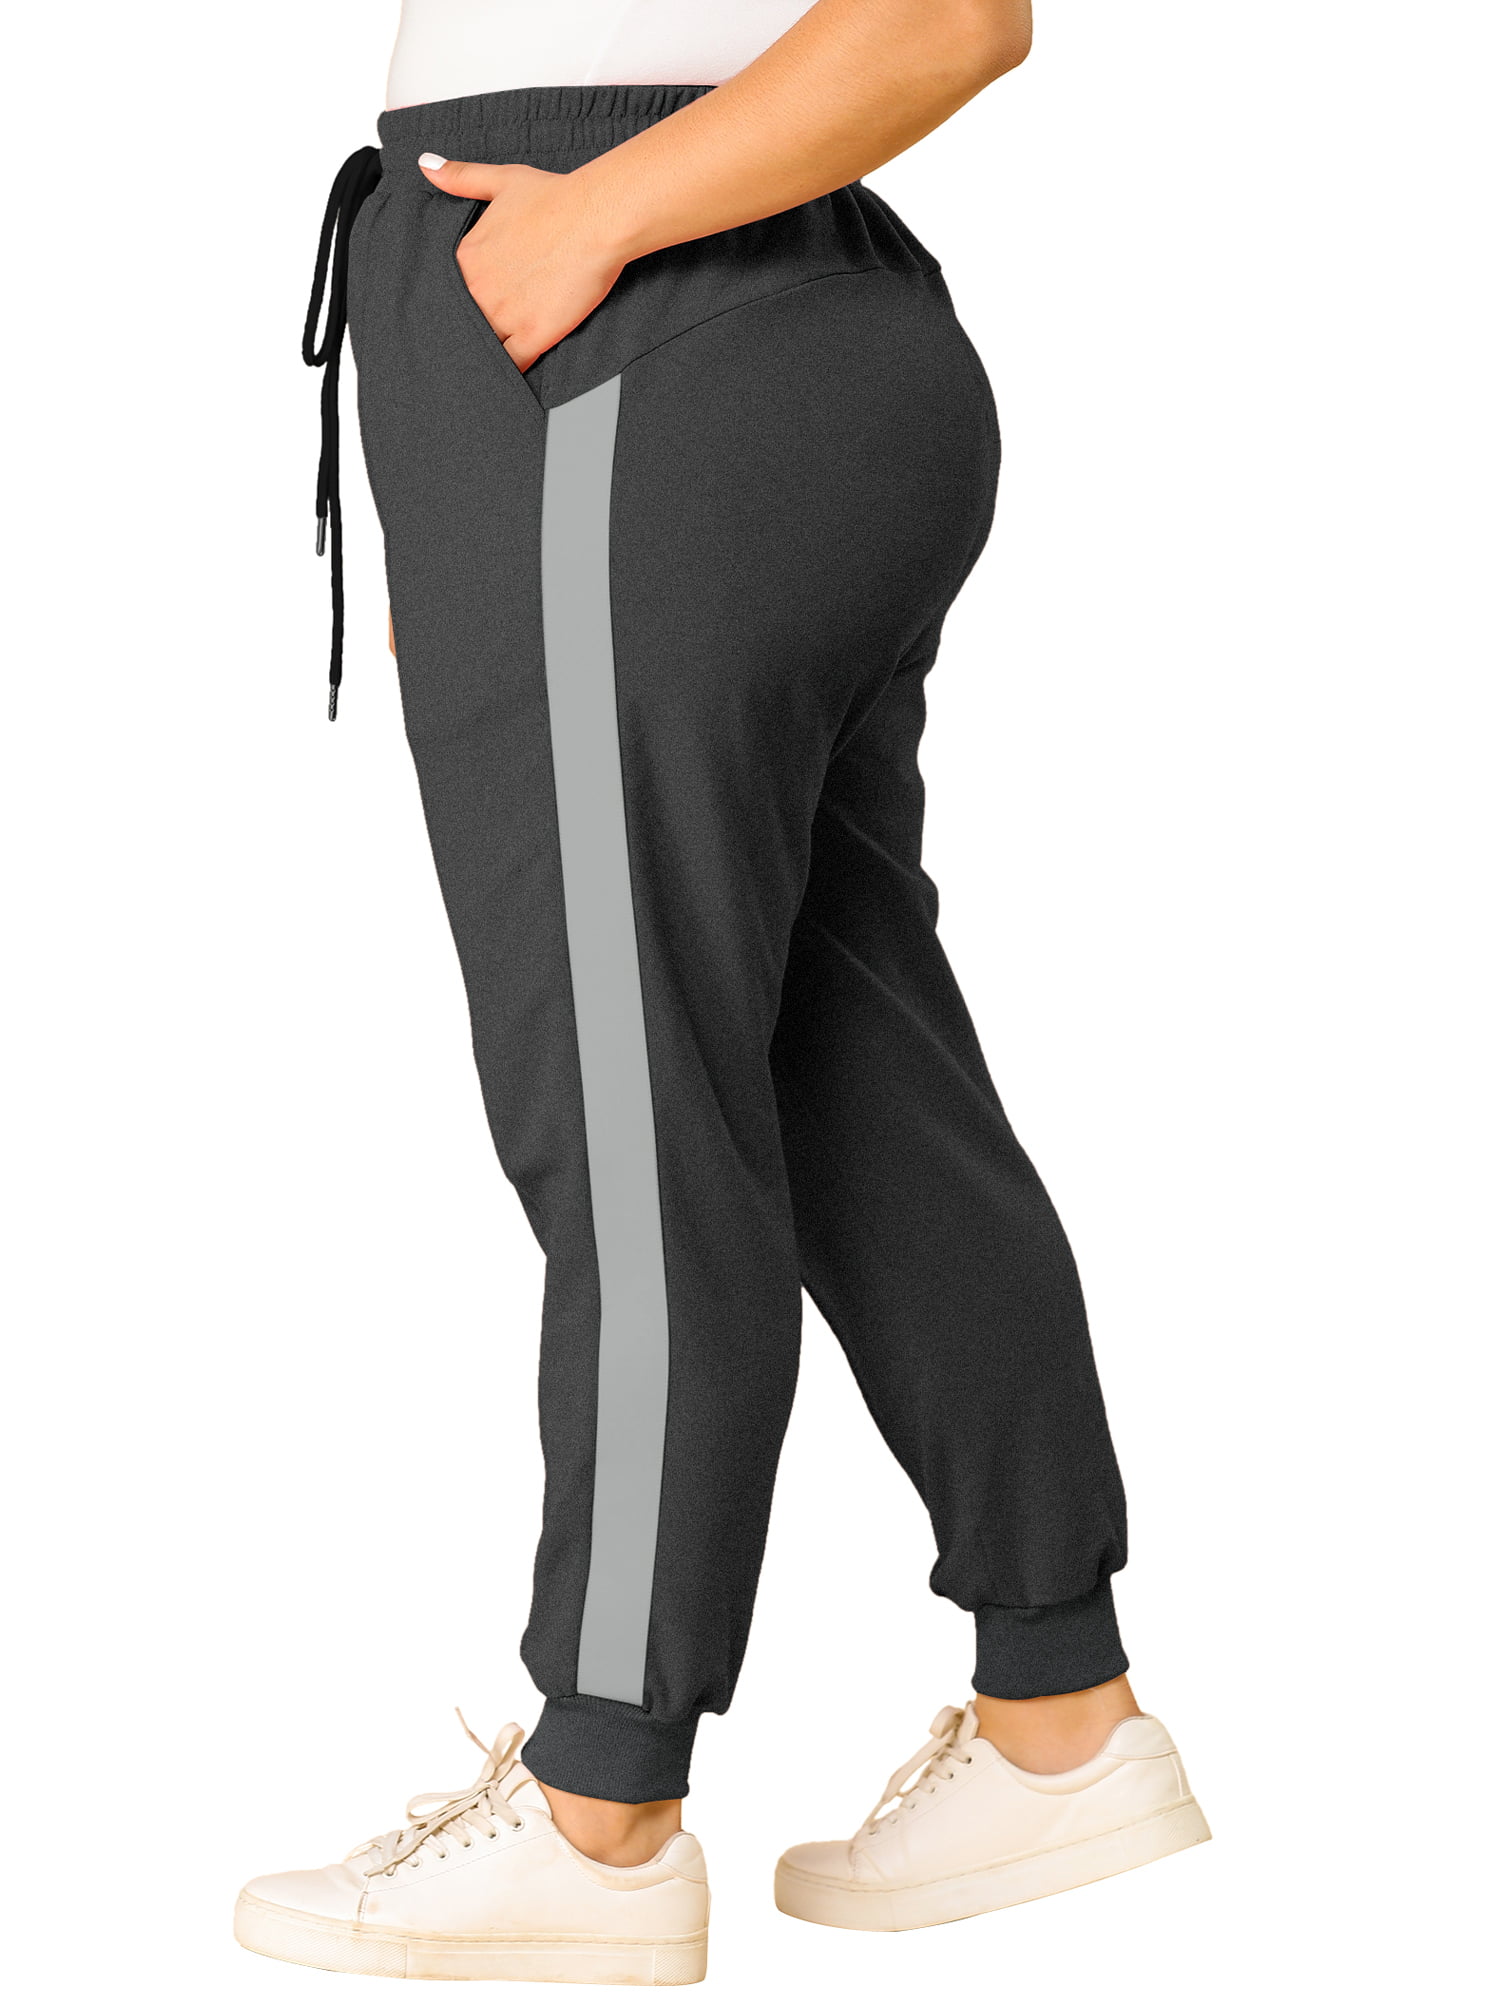 Unique Bargains Women's Plus Size Sweatpants Elastic Waist Joggers Pants -  Walmart.com